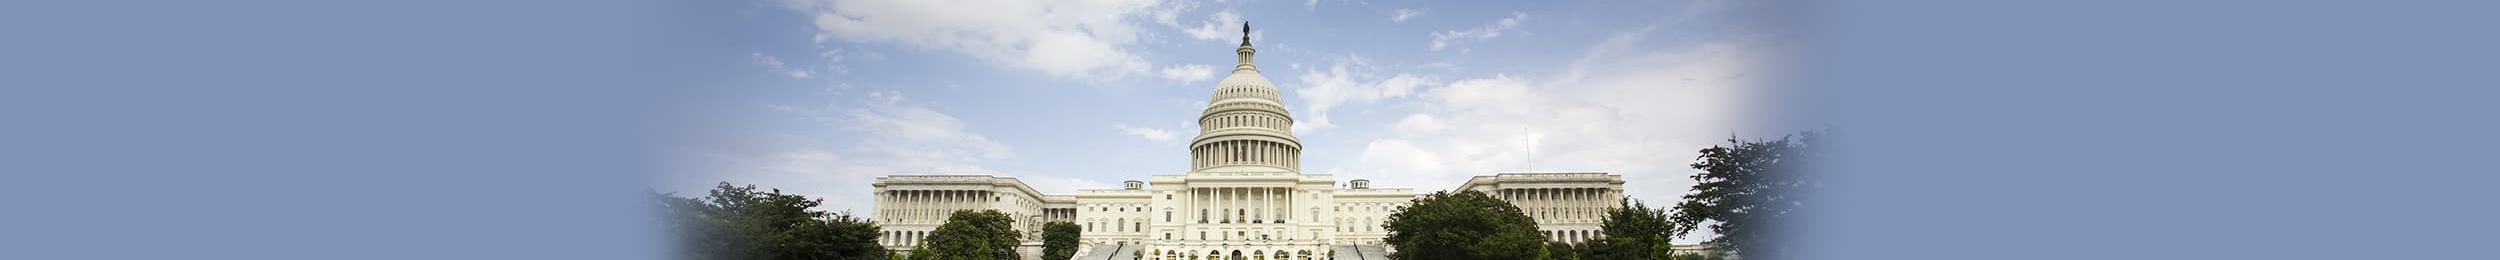 Capitol hill building